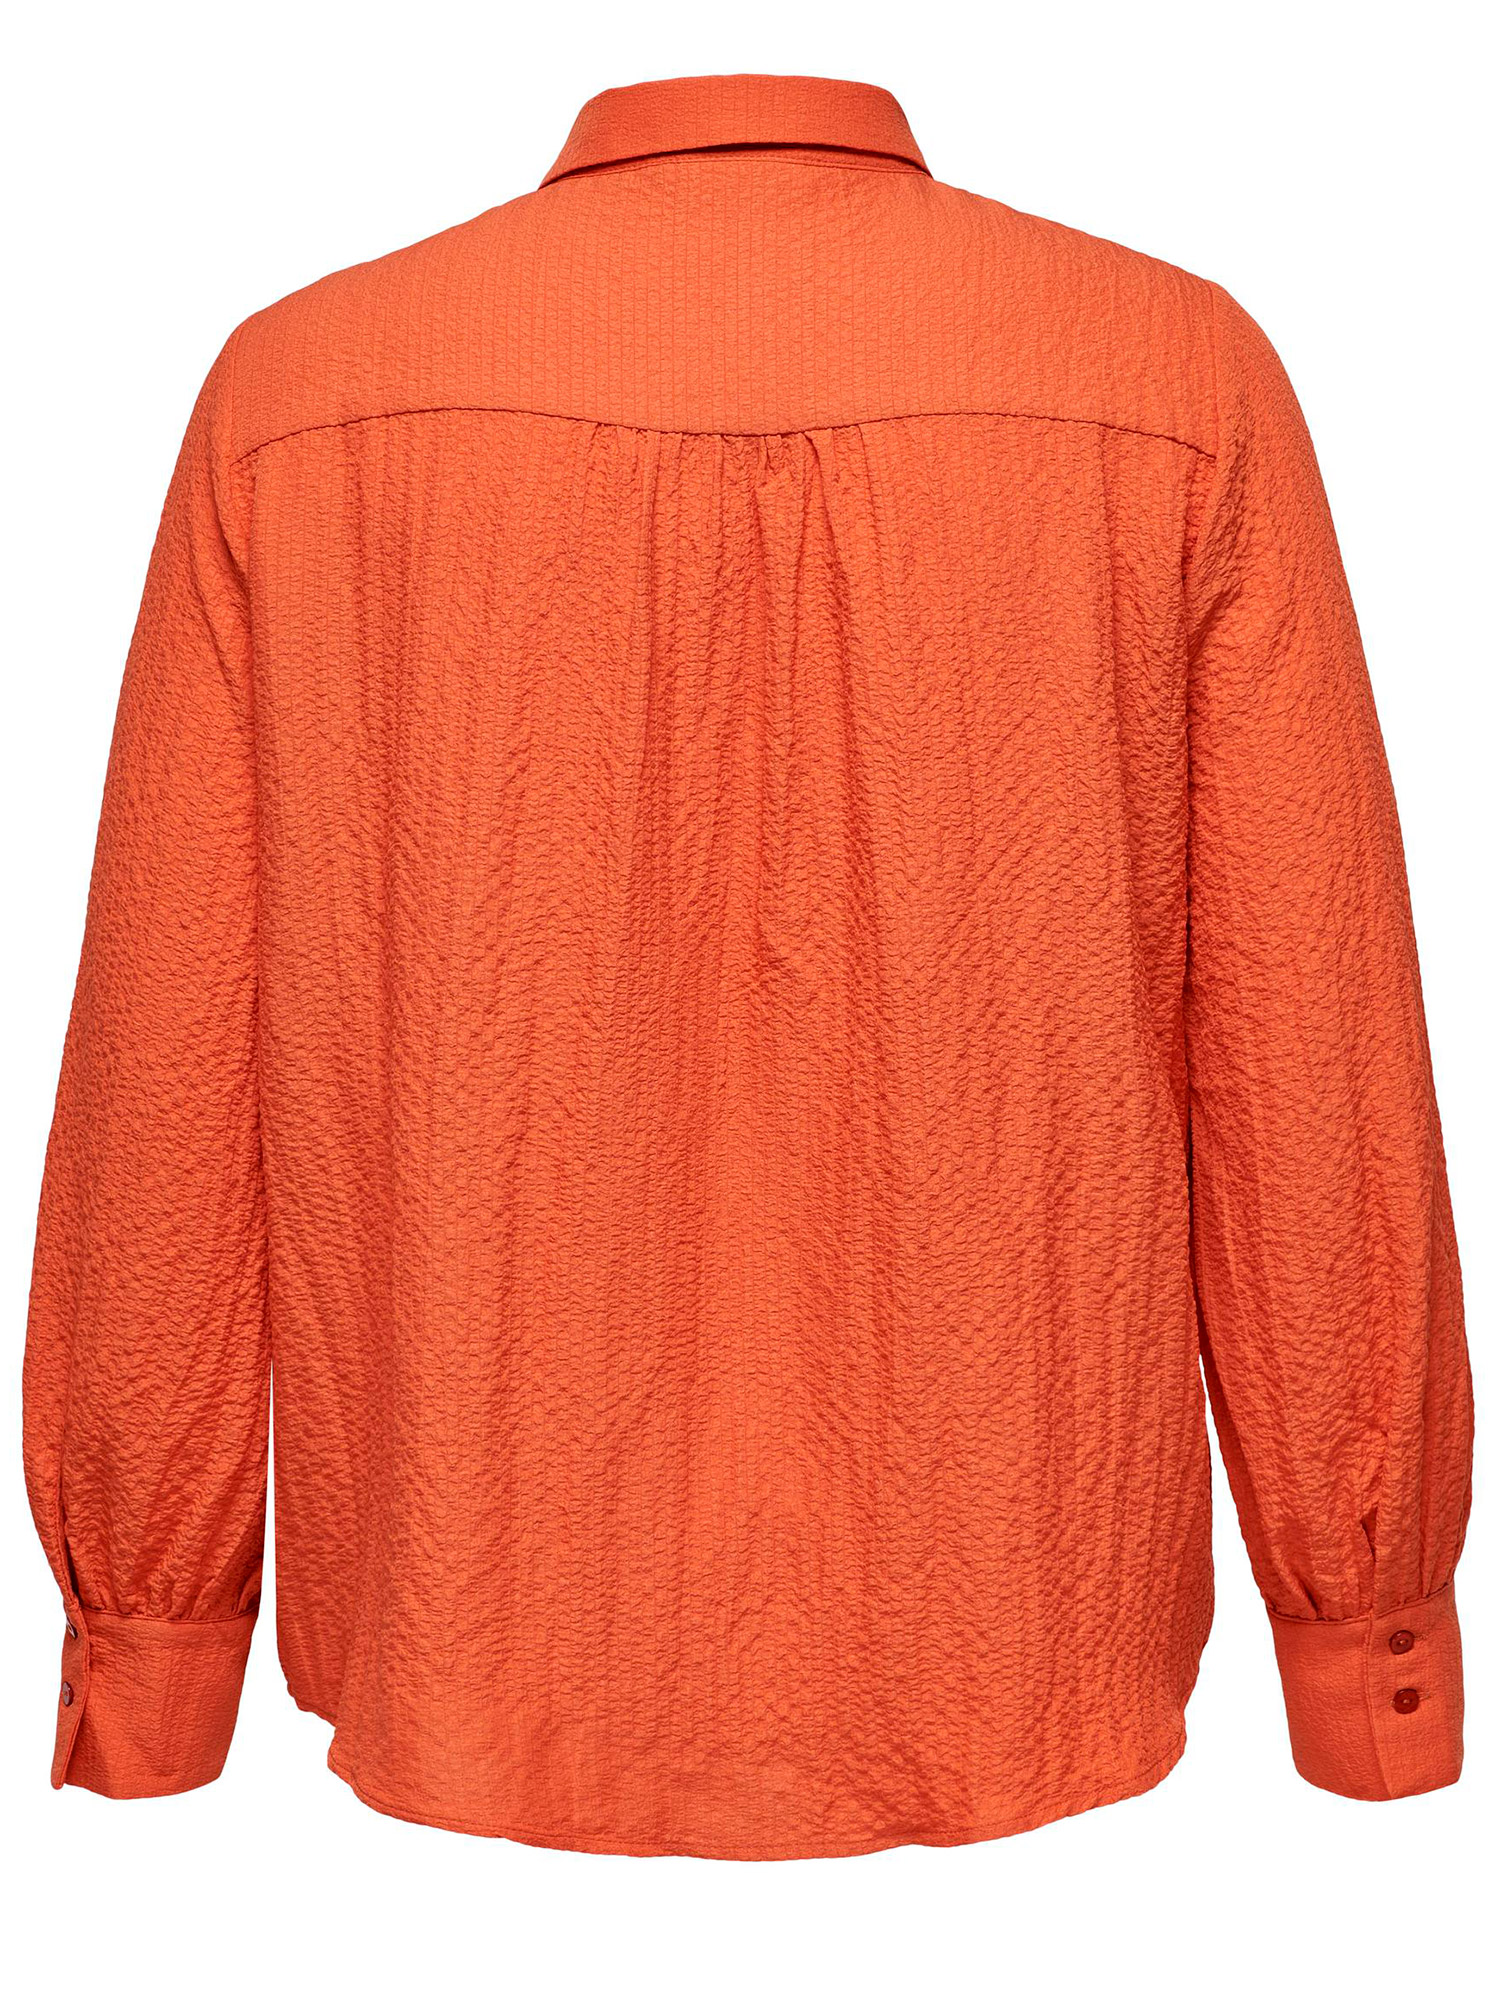 ELVIRO - Orange skjorte med flot struktur fra Only Carmakoma